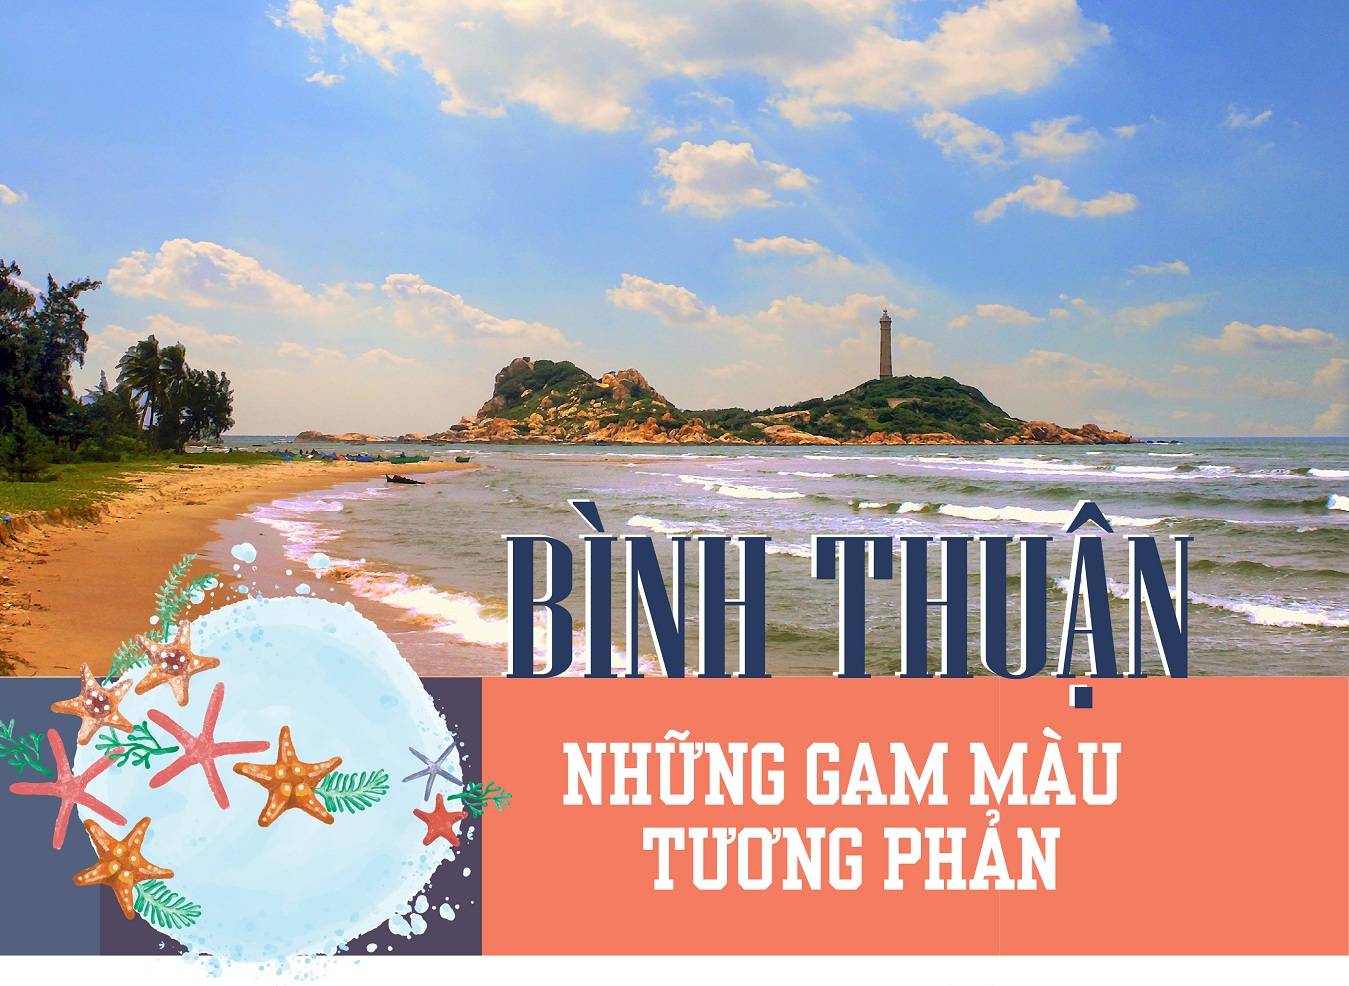 Phân khúc bất động sản nghỉ dưỡng Bình Thuận